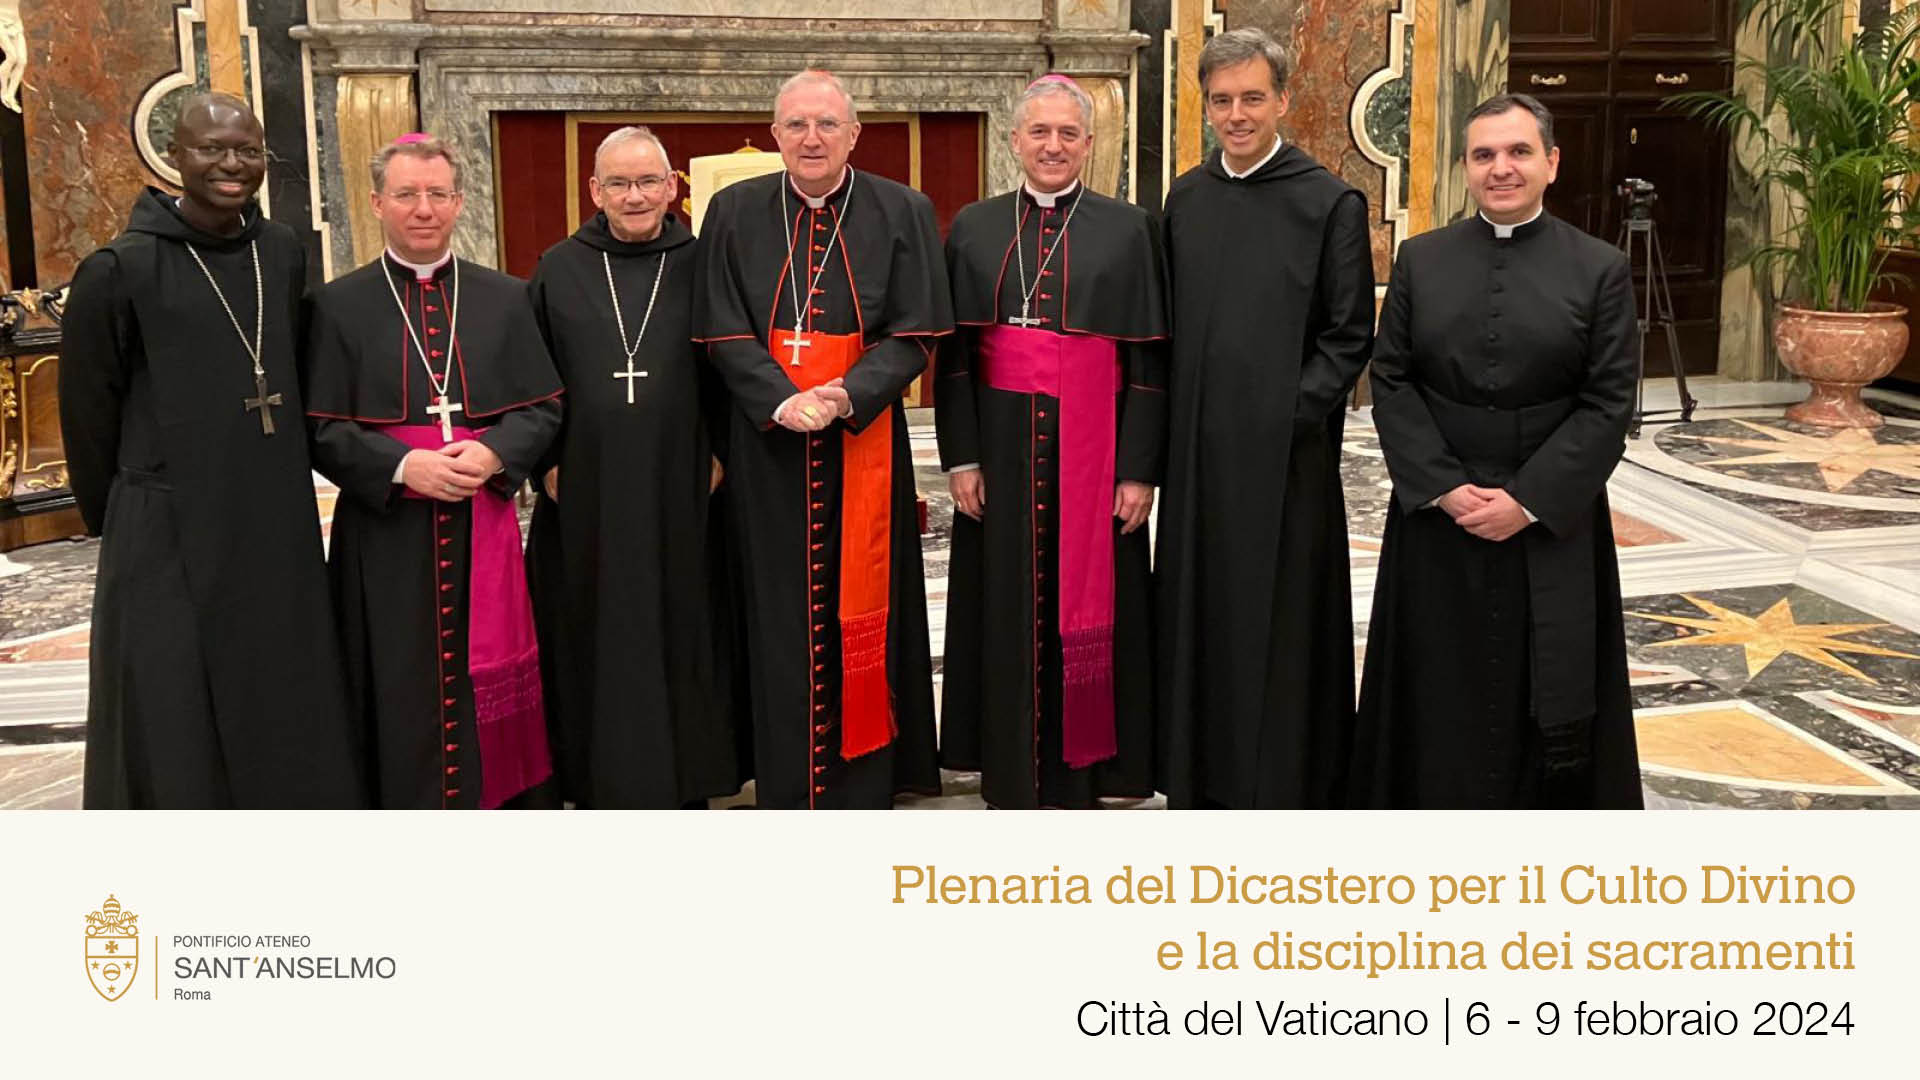 Sant’Anselmo in Vaticano alla Plenaria del Dicastero per il Culto Divino e la disciplina dei sacramenti